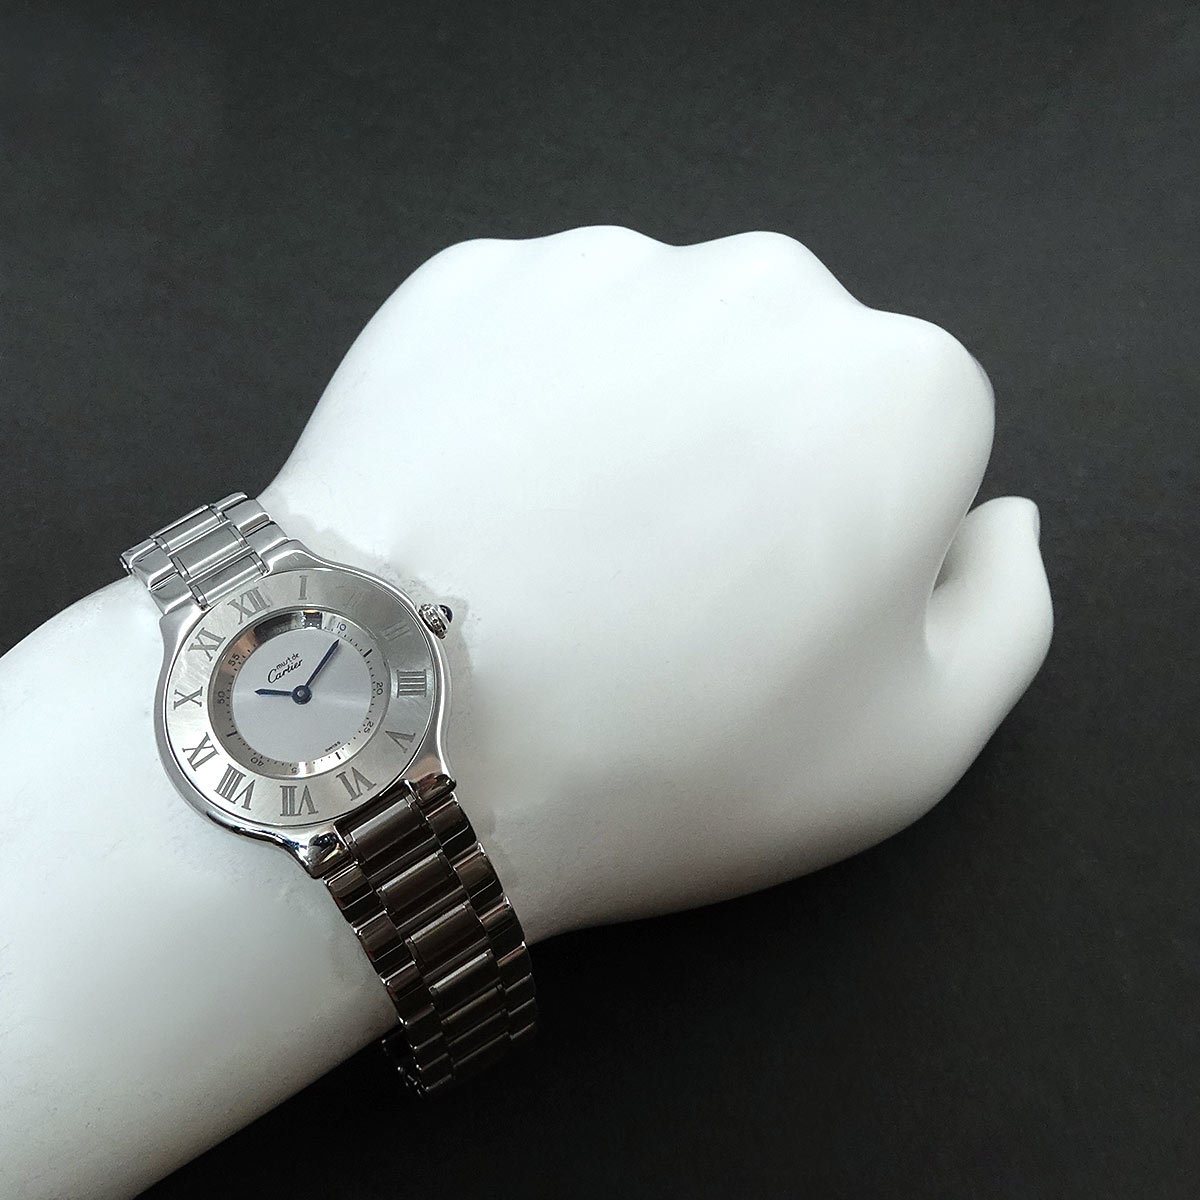  Cartier Cartier Must 21 Van ti Anne W10110T2 boys wristwatch silver face quartz watch Must 21 90220131